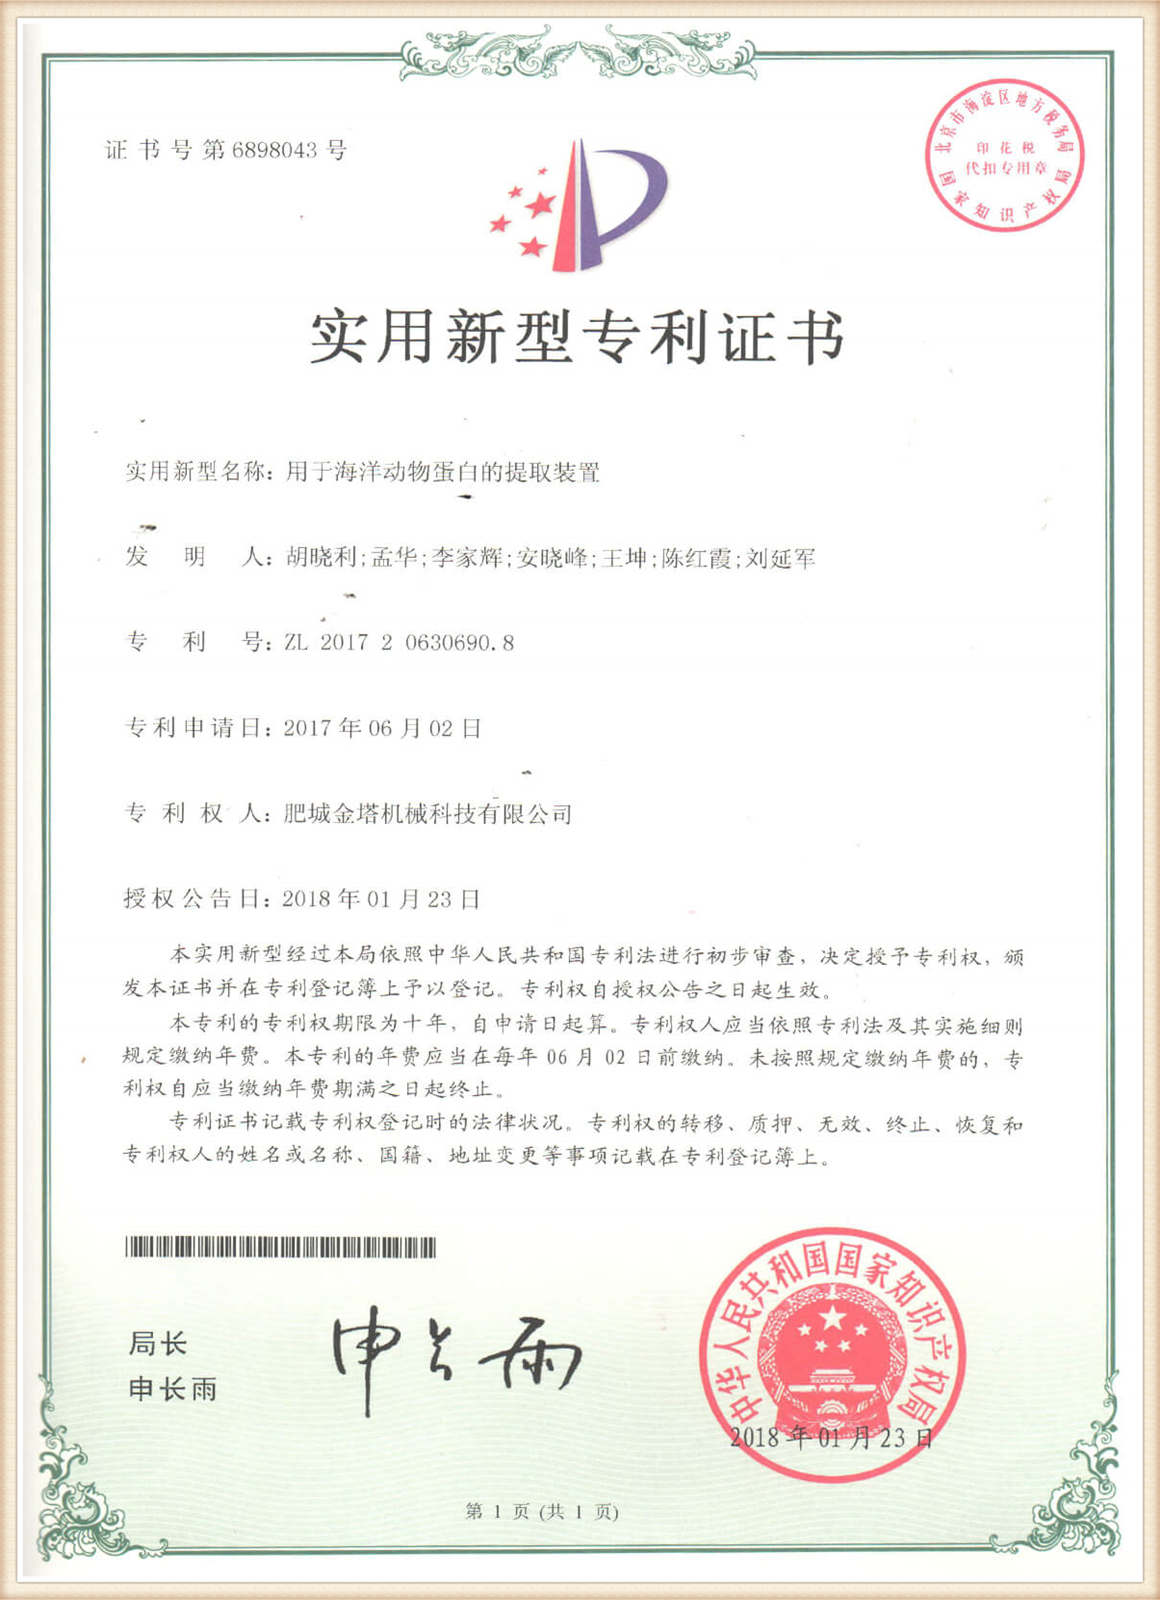 प्यान्ट प्रमाणीकरण06